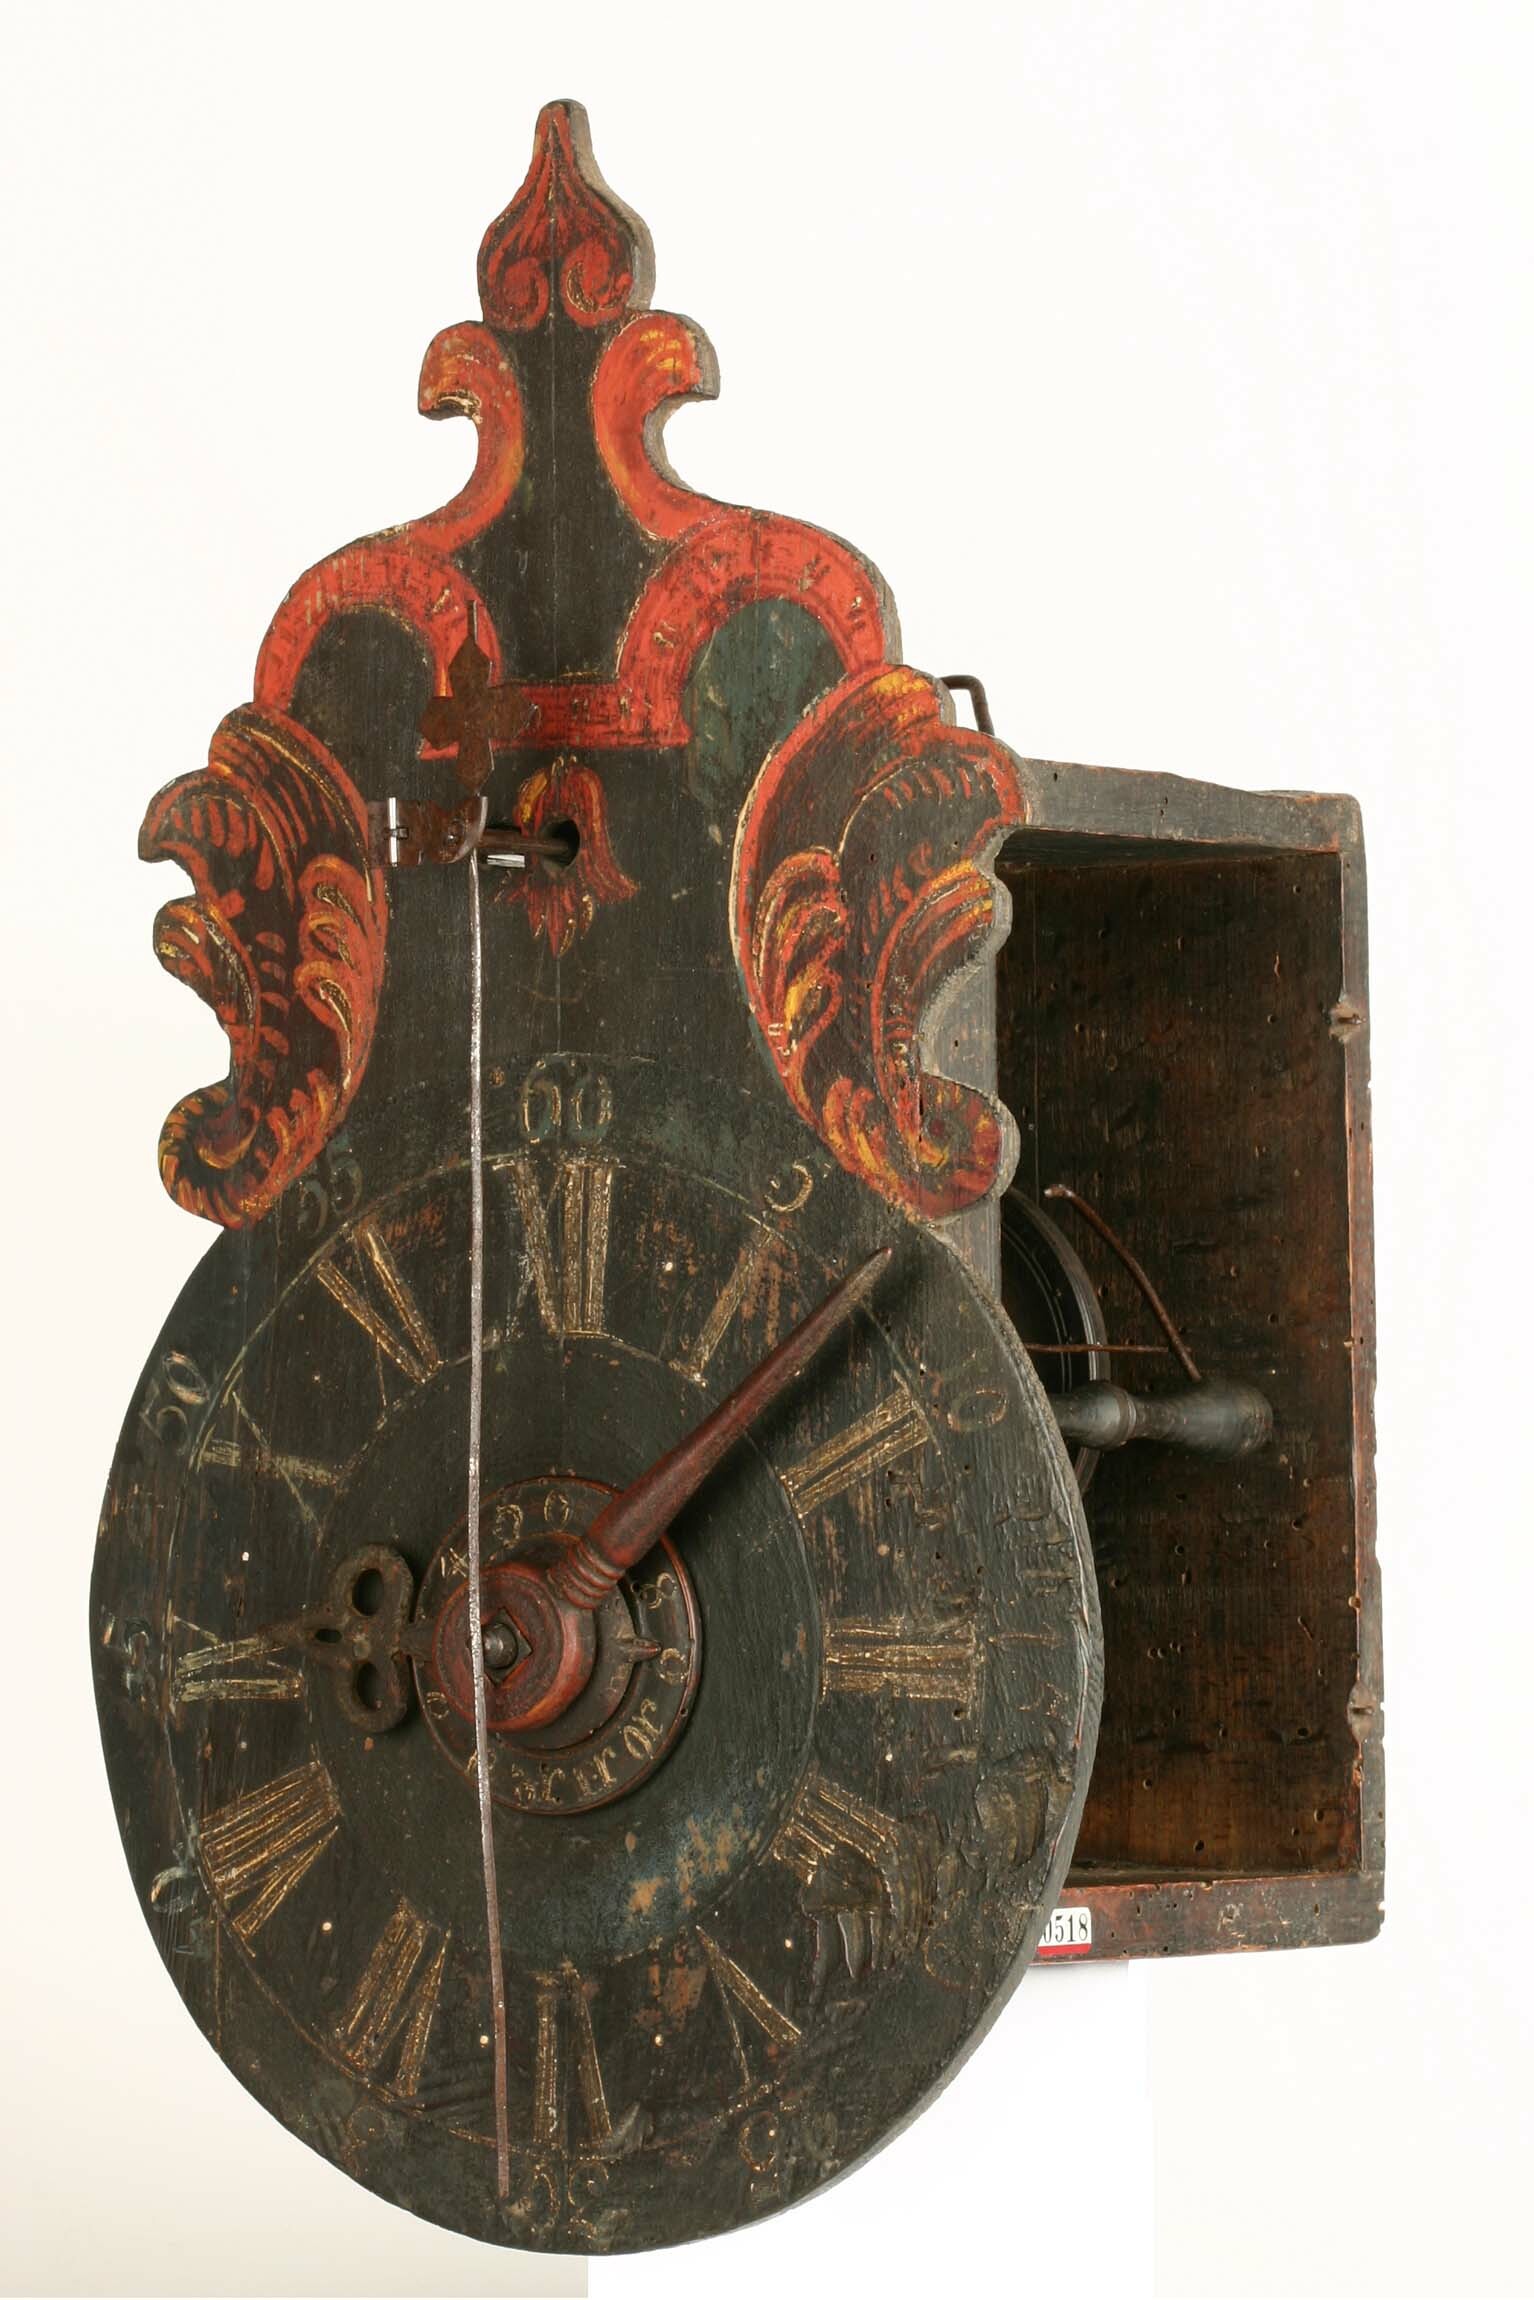 Holzräderuhr, Raum Lößnitz (Sachsen), um 1800 (Deutsches Uhrenmuseum CC BY-SA)